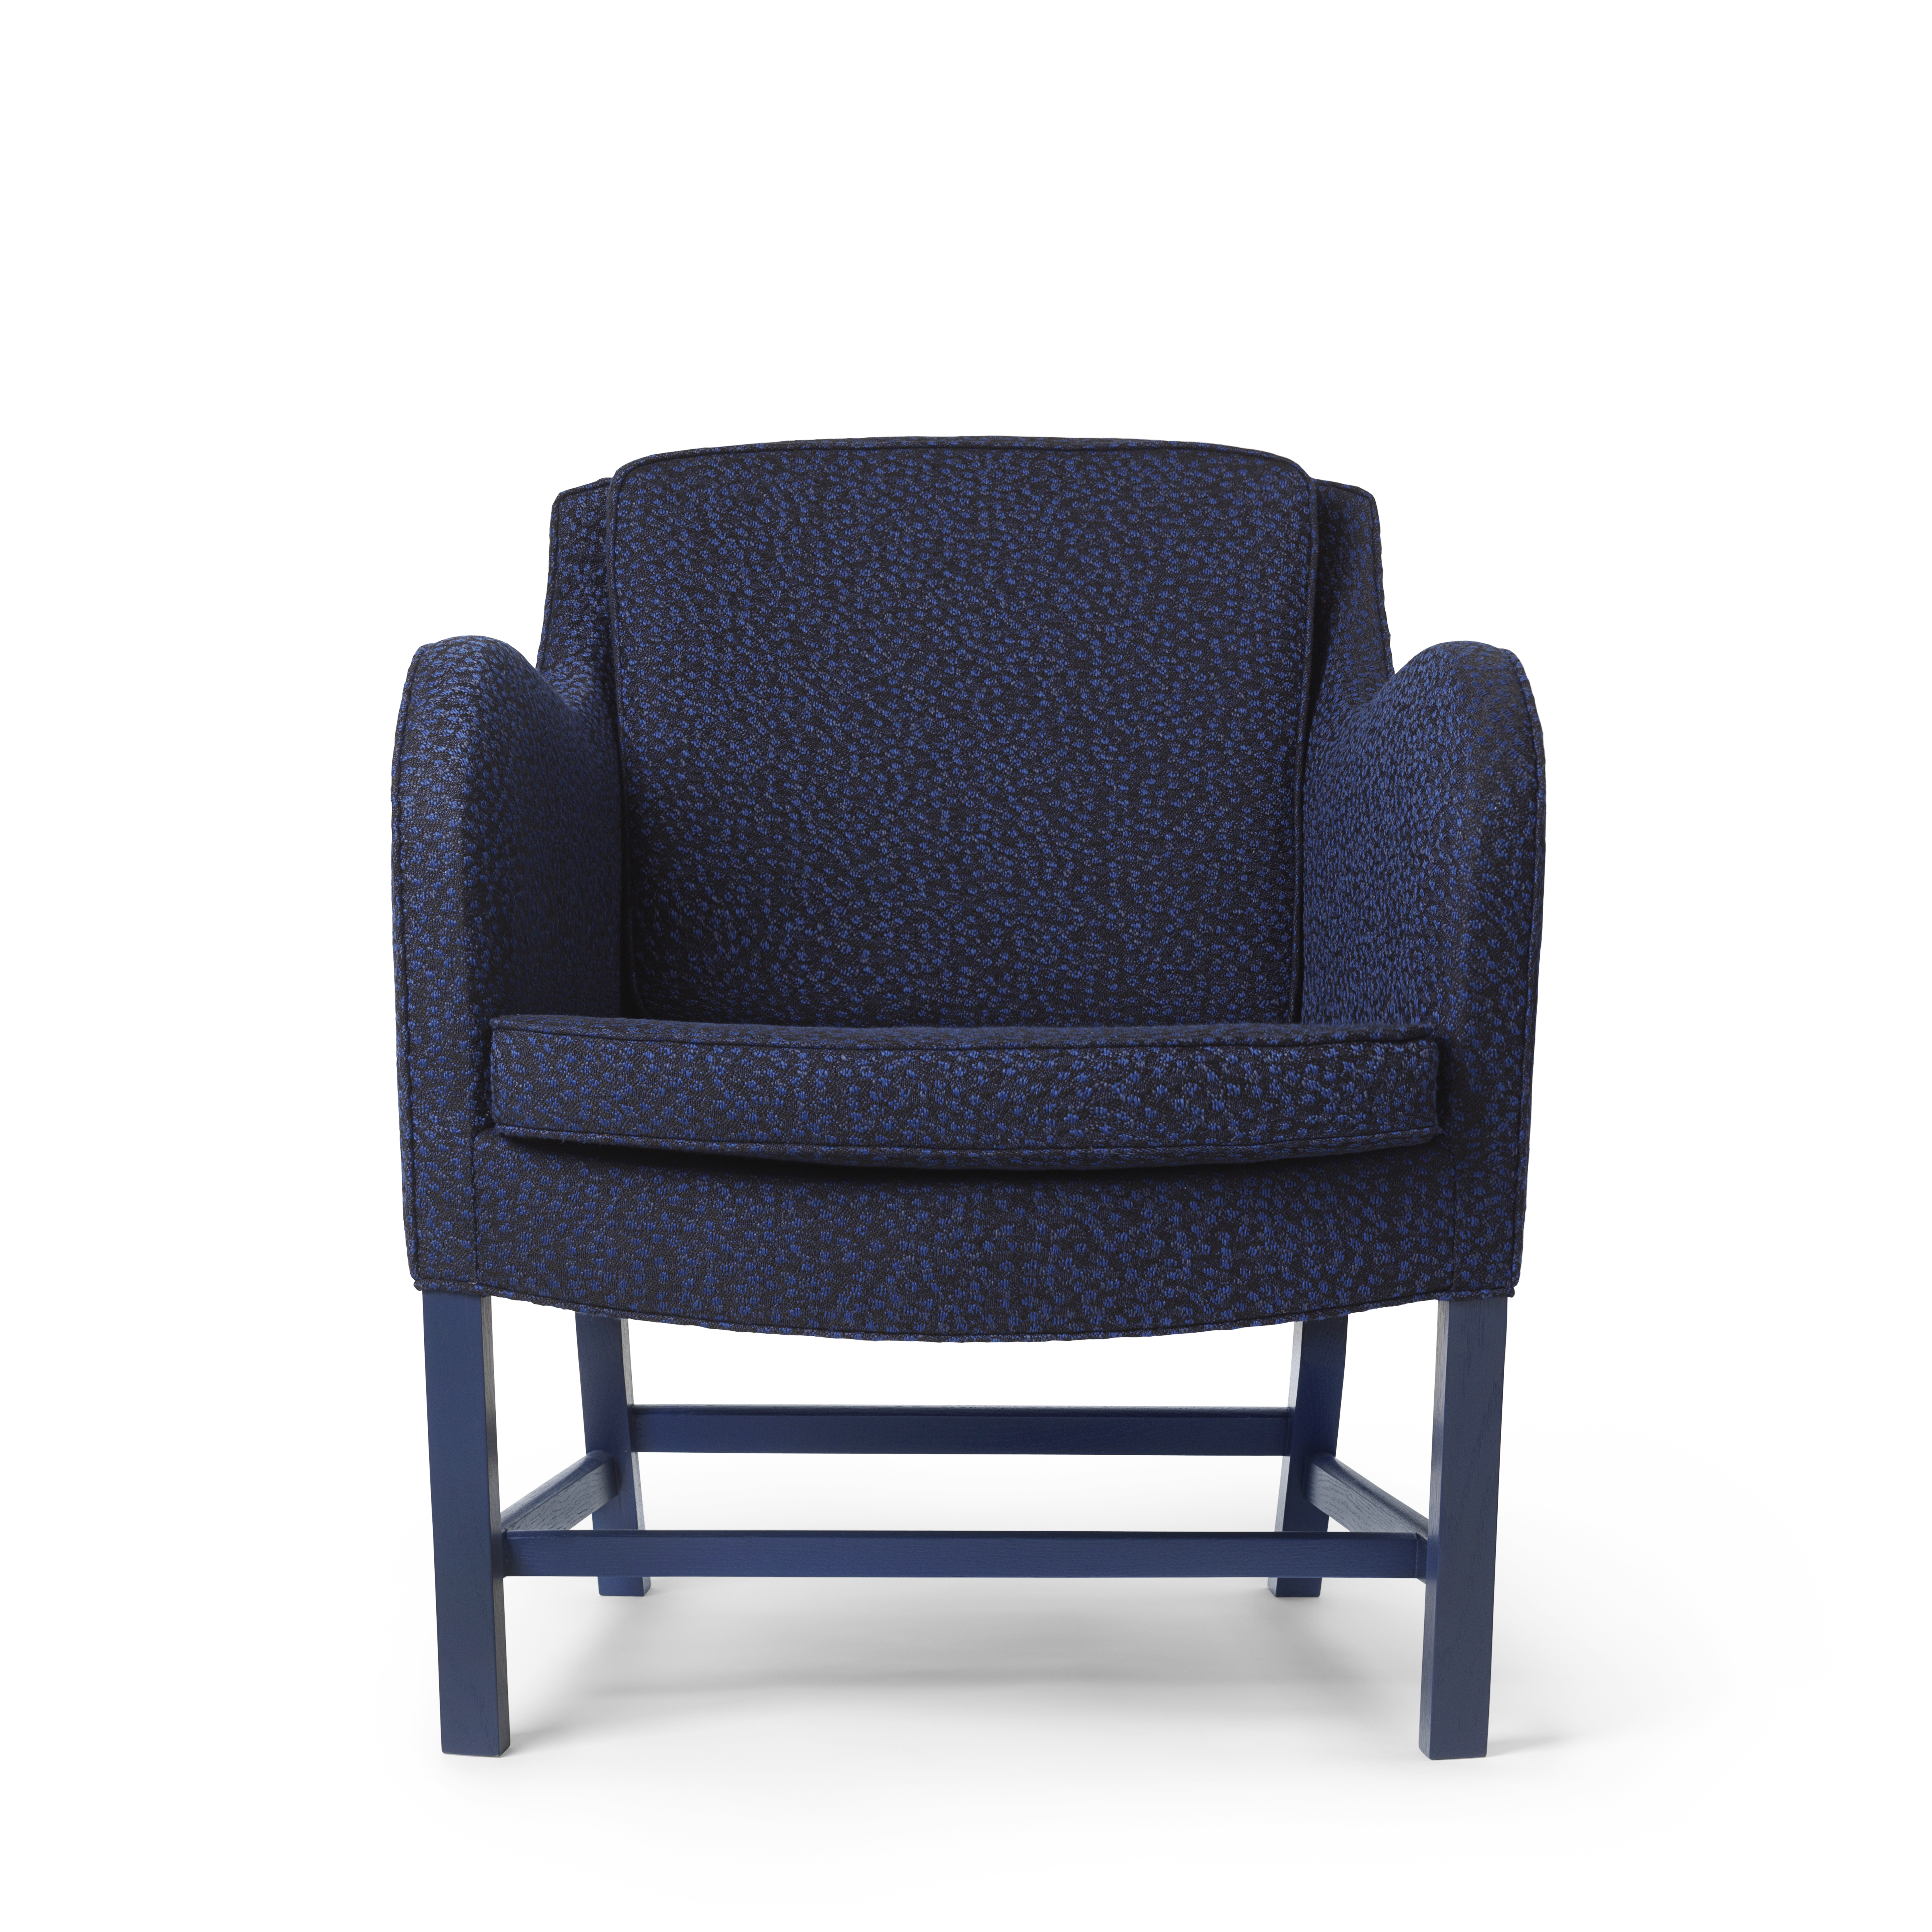 KK43960 Mix Chair eiken klant gespecificeerde buizen HR Ria 791 | Mix Chair Exclusive